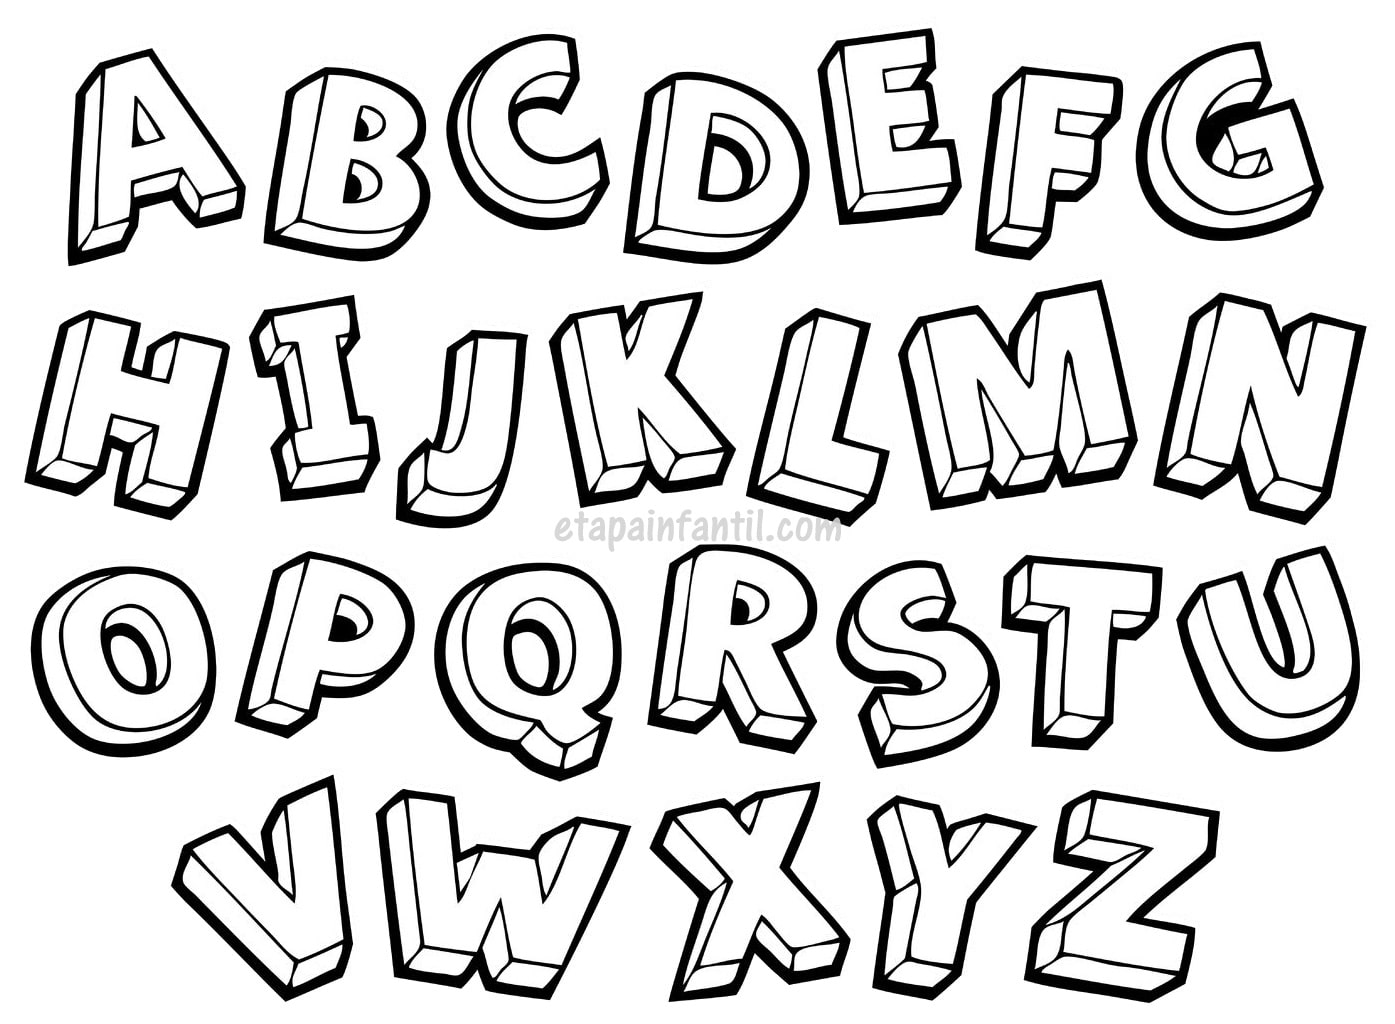 Ensenar De Forma Divertida El Abecedario A Un Nino Etapa Infantil 10+ letras del abecedario con dibujos para colorear. etapa infantil